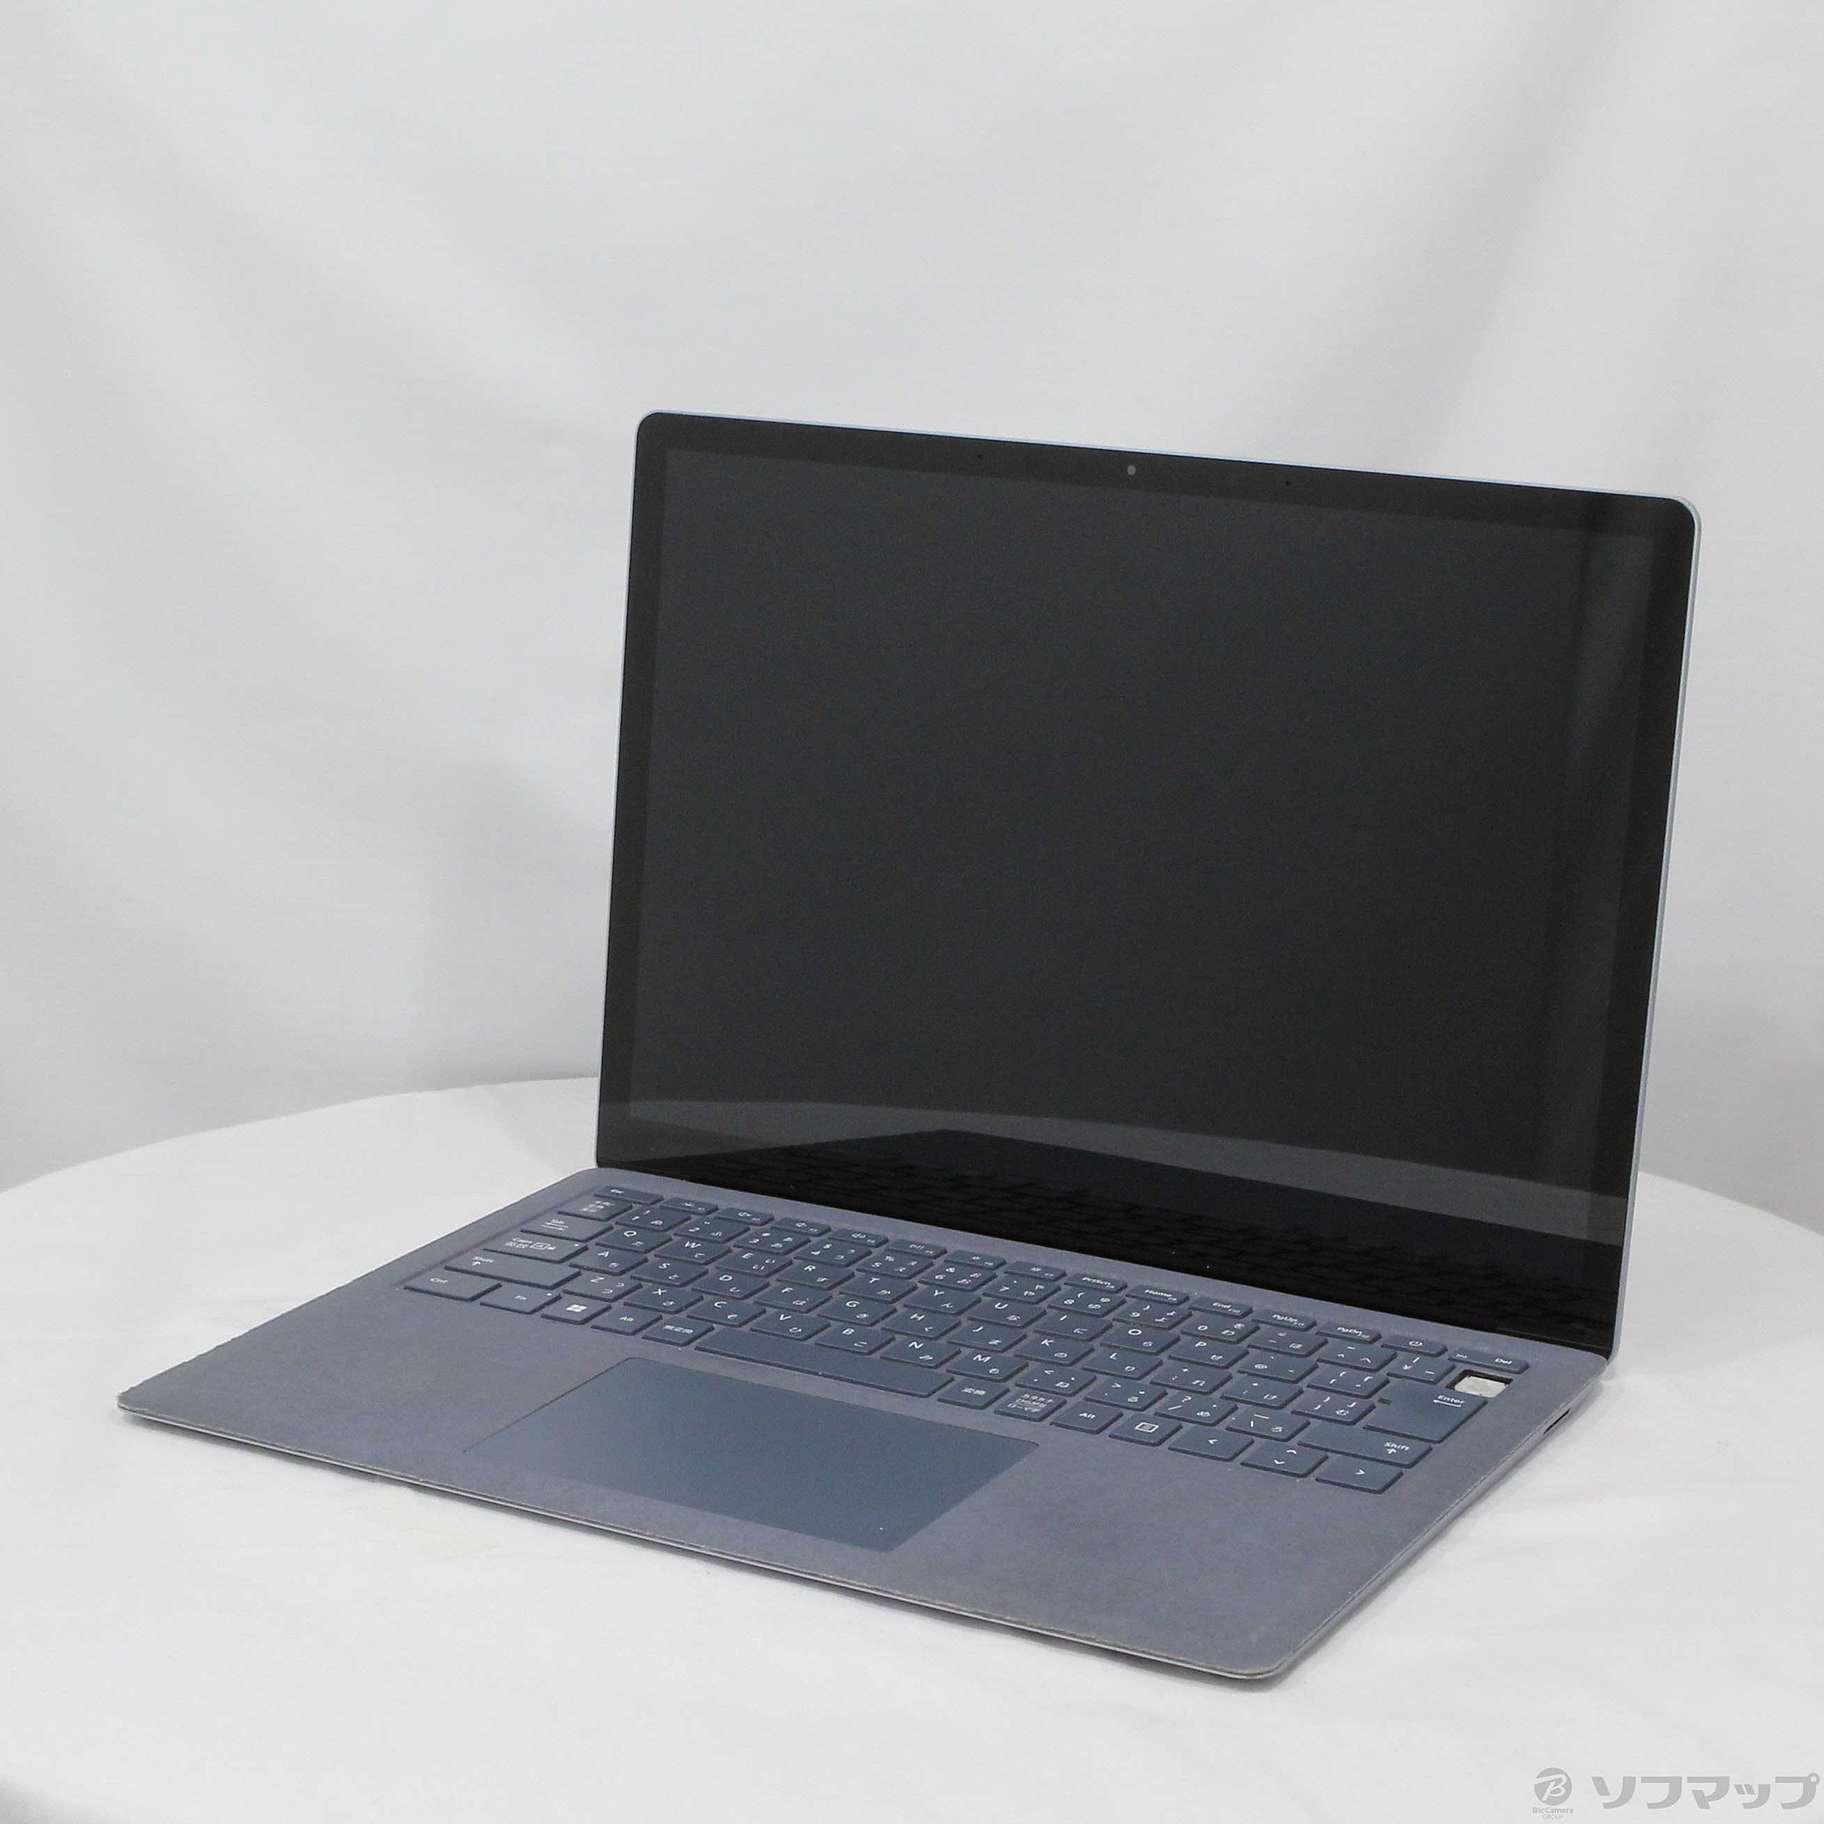 中古電源ケーブル付属・Surface Laptop4 N1P-00001 16GB 256GB